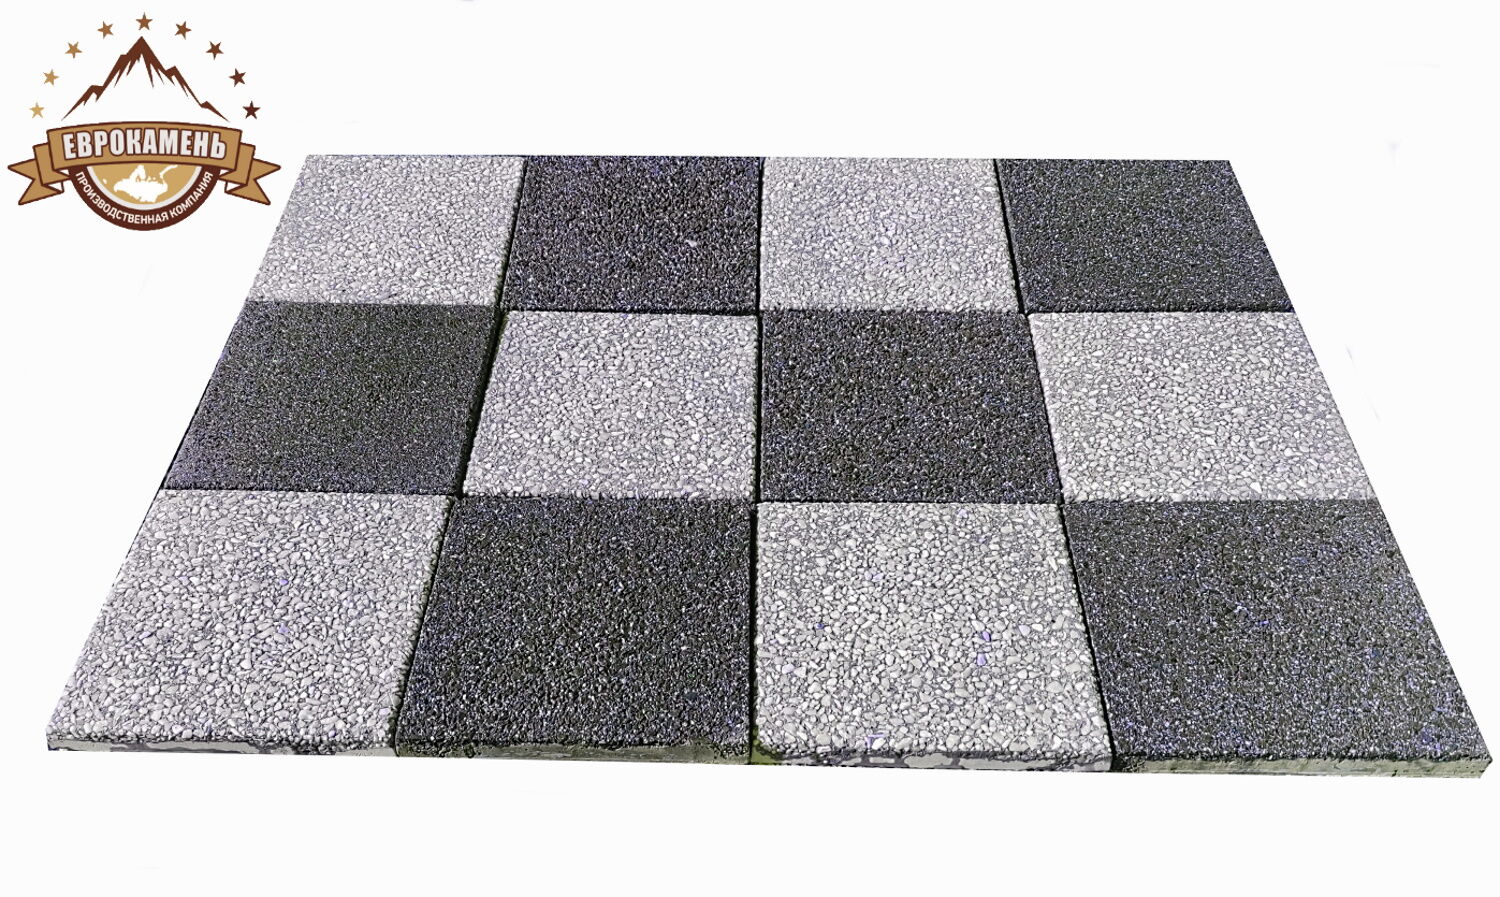 Тротуарная плитка "Шахматная доска" из натуральной белой Мраморной крошки и черного Габбро-диабаза, размер 300х300х30мм